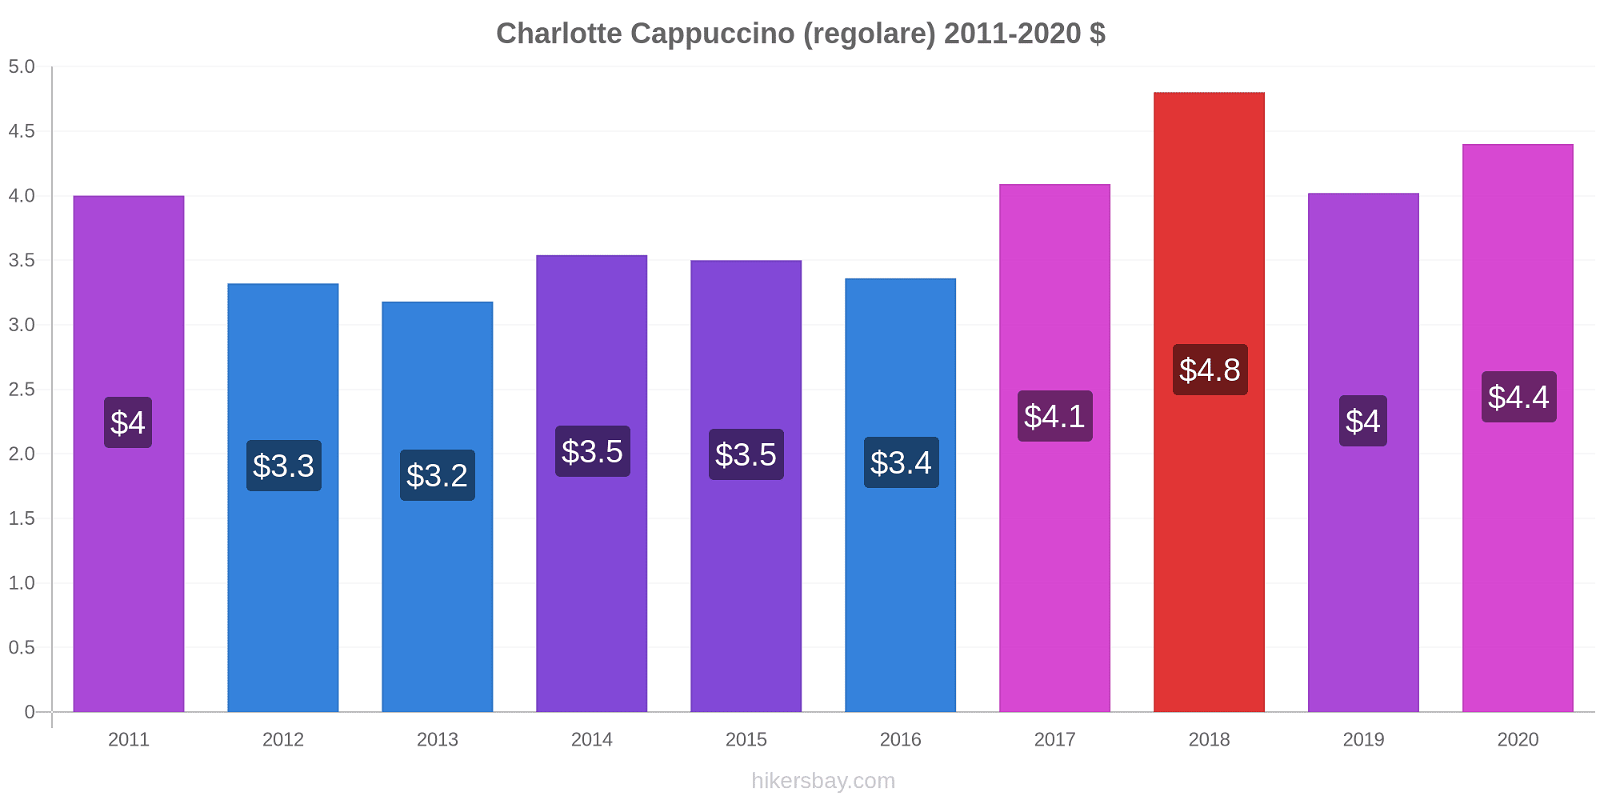 Charlotte variazioni di prezzo Cappuccino (normale) hikersbay.com